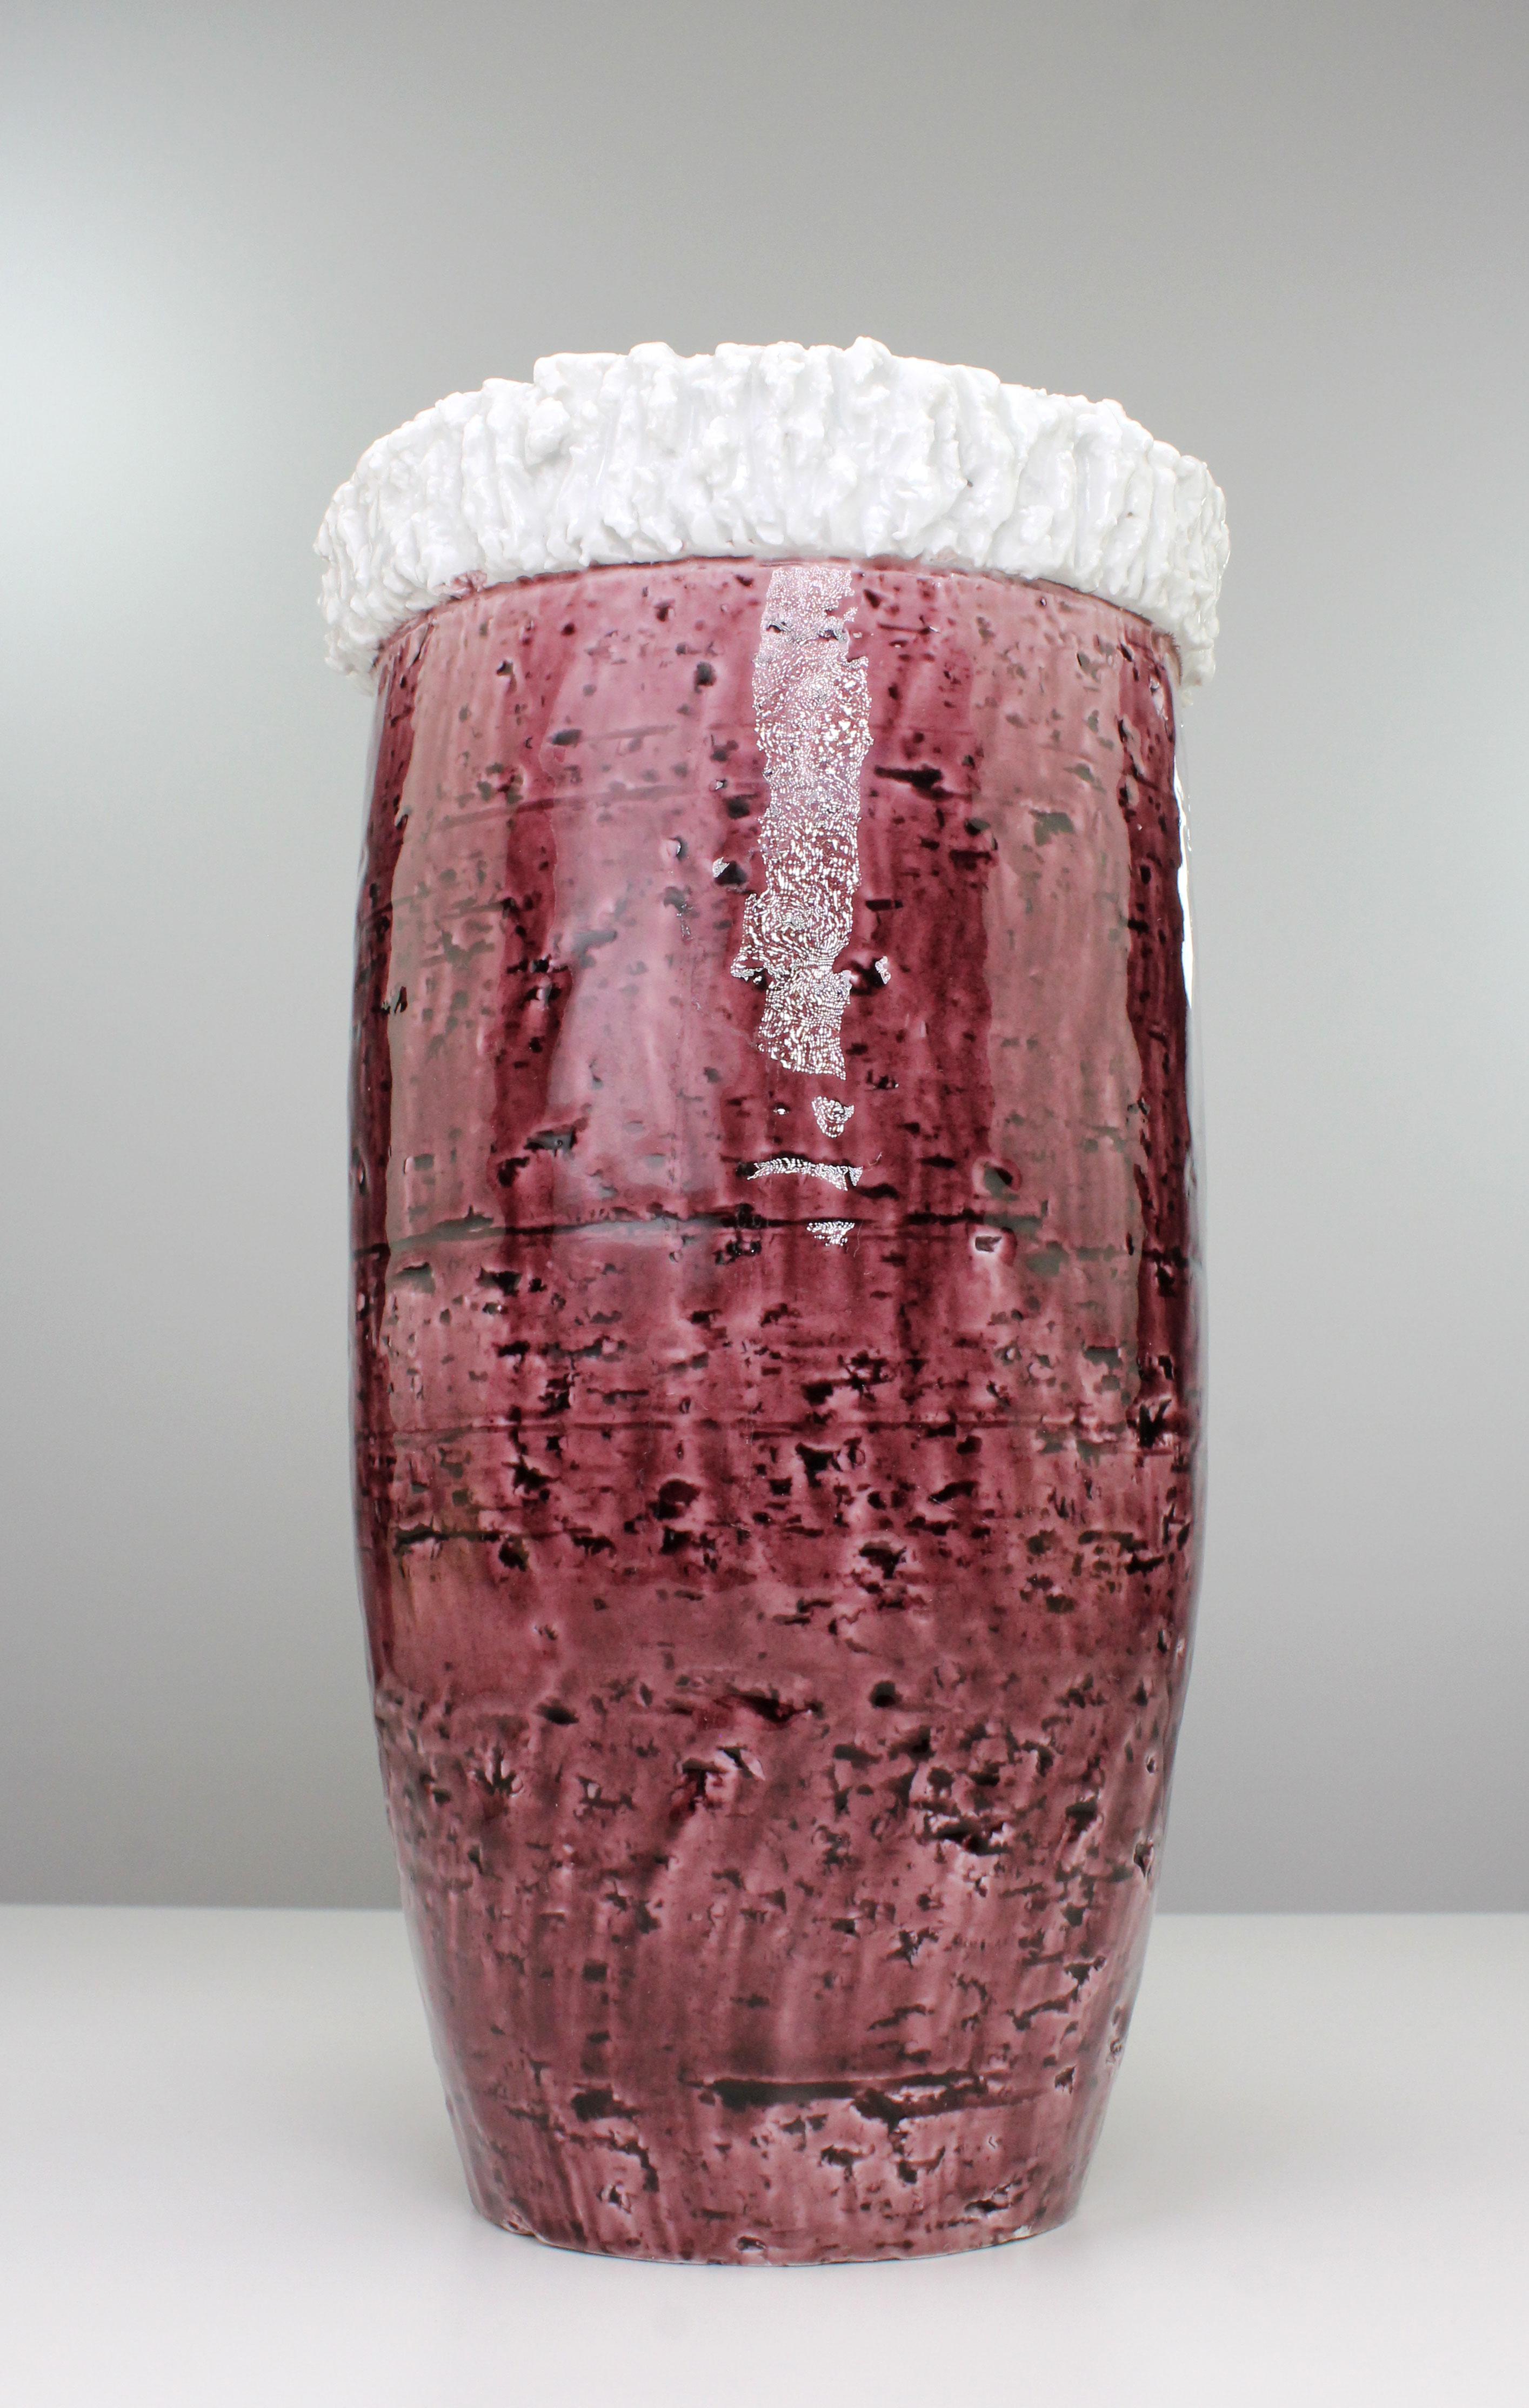 Außergewöhnliche skandinavische Vase aus der Mitte des Jahrhunderts, handgefertigt aus Schamotte, Ton und Porzellan von dem bekannten schwedischen Designer Gunnar Nylund für Rörstrand. Schamottekörper mit glänzender, tief himbeer- und